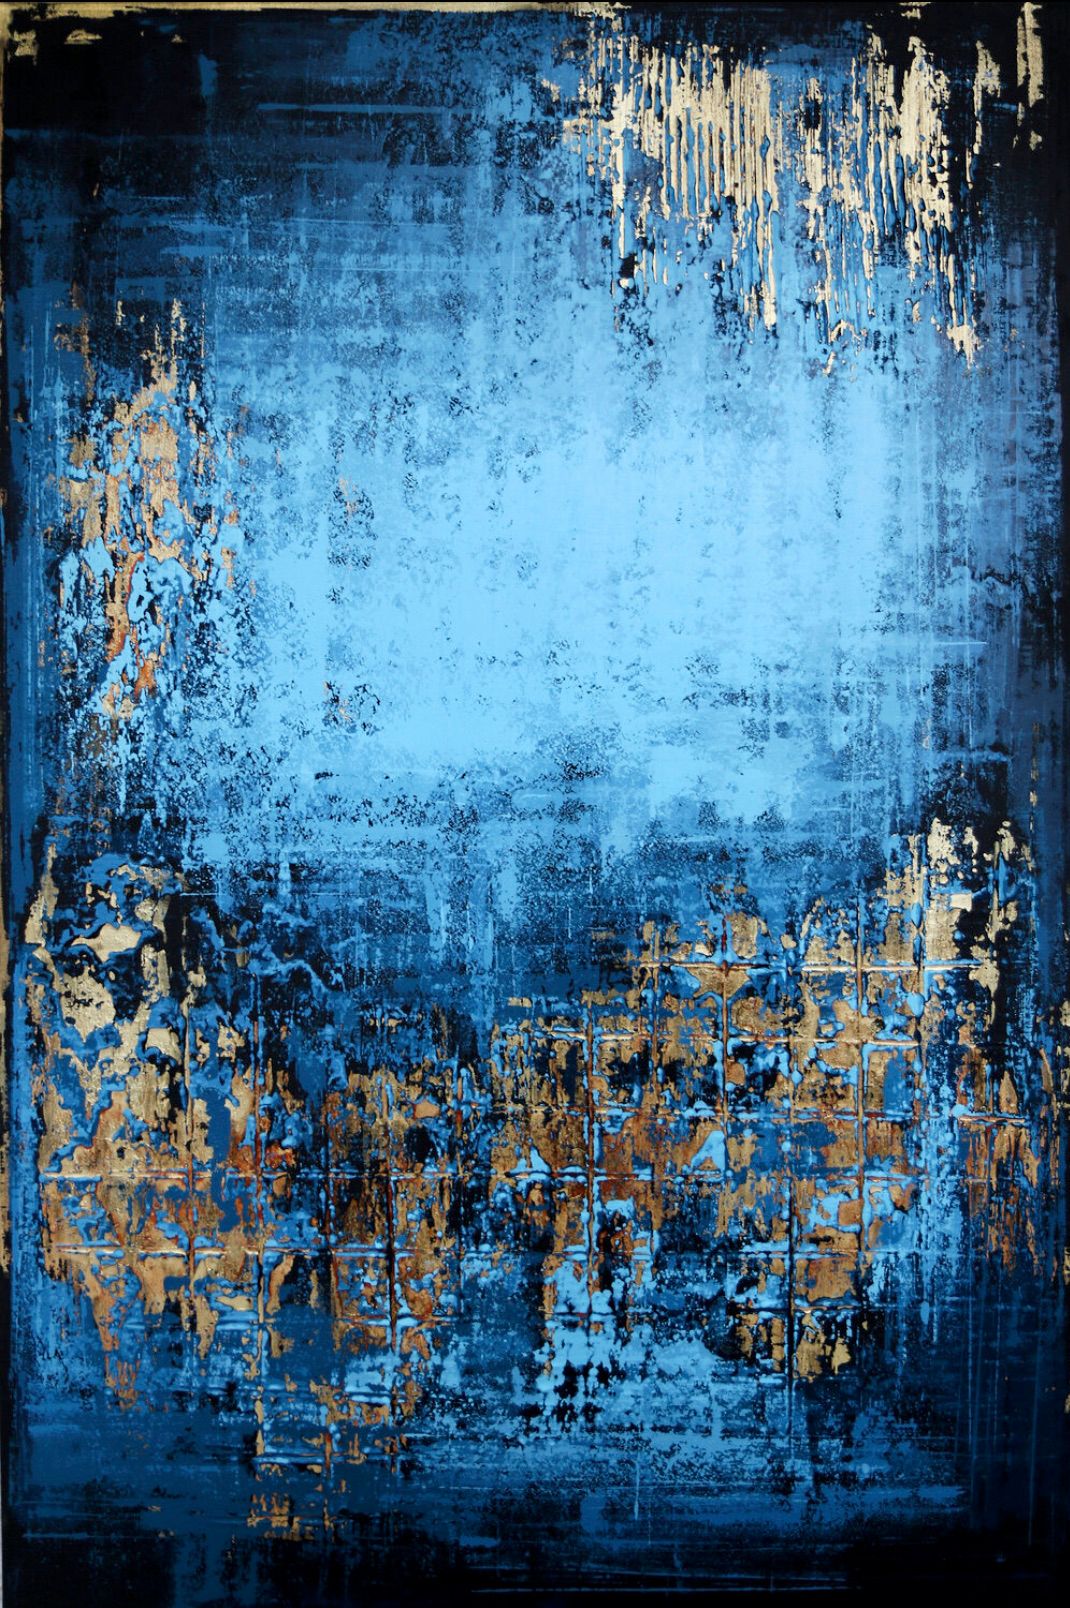 En el cuadro abstracto "MIDSUMMER NIGHT" de Inez Froehlich predominan los colores cobre, dorado, azul, azul y azul. El estilo del cuadro es shabby chic, estilo industrial, vintage, retro, boho, rústico.